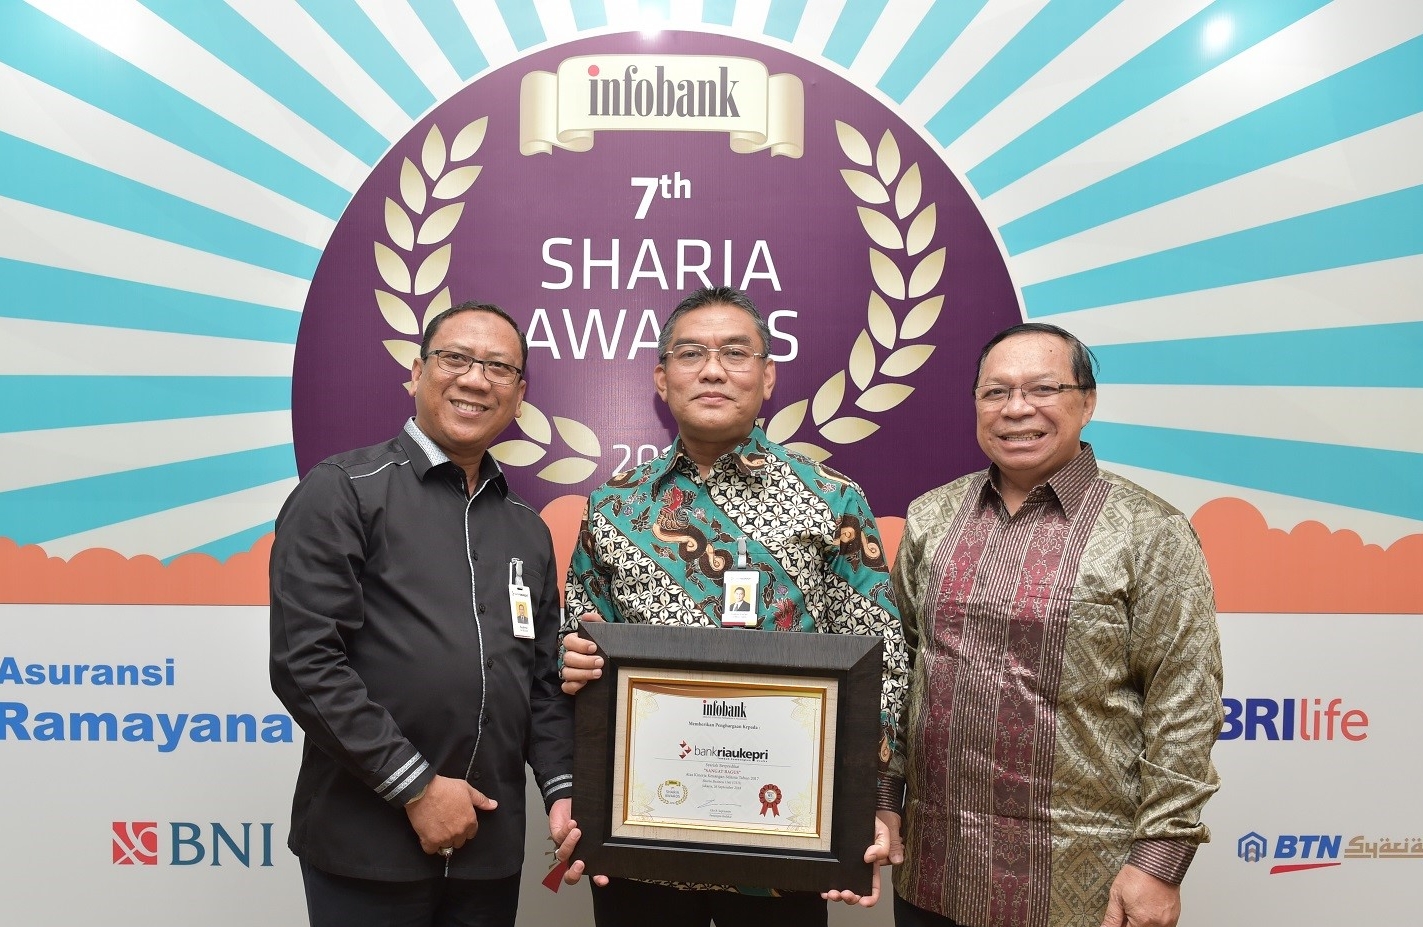   Dirut Bank Riau Kepri DR. Irvandi Gustari bersama Pemimpin Divisi Bisnis Syariah Syahrul dan Pemimpin Divisi Operasional dan Perencanaan Syariah Zaini Ahmad usai menerima Award predikat kinerja “Sangat Bagus” pada ajang 7th Infobank Sharia Awards 2018.